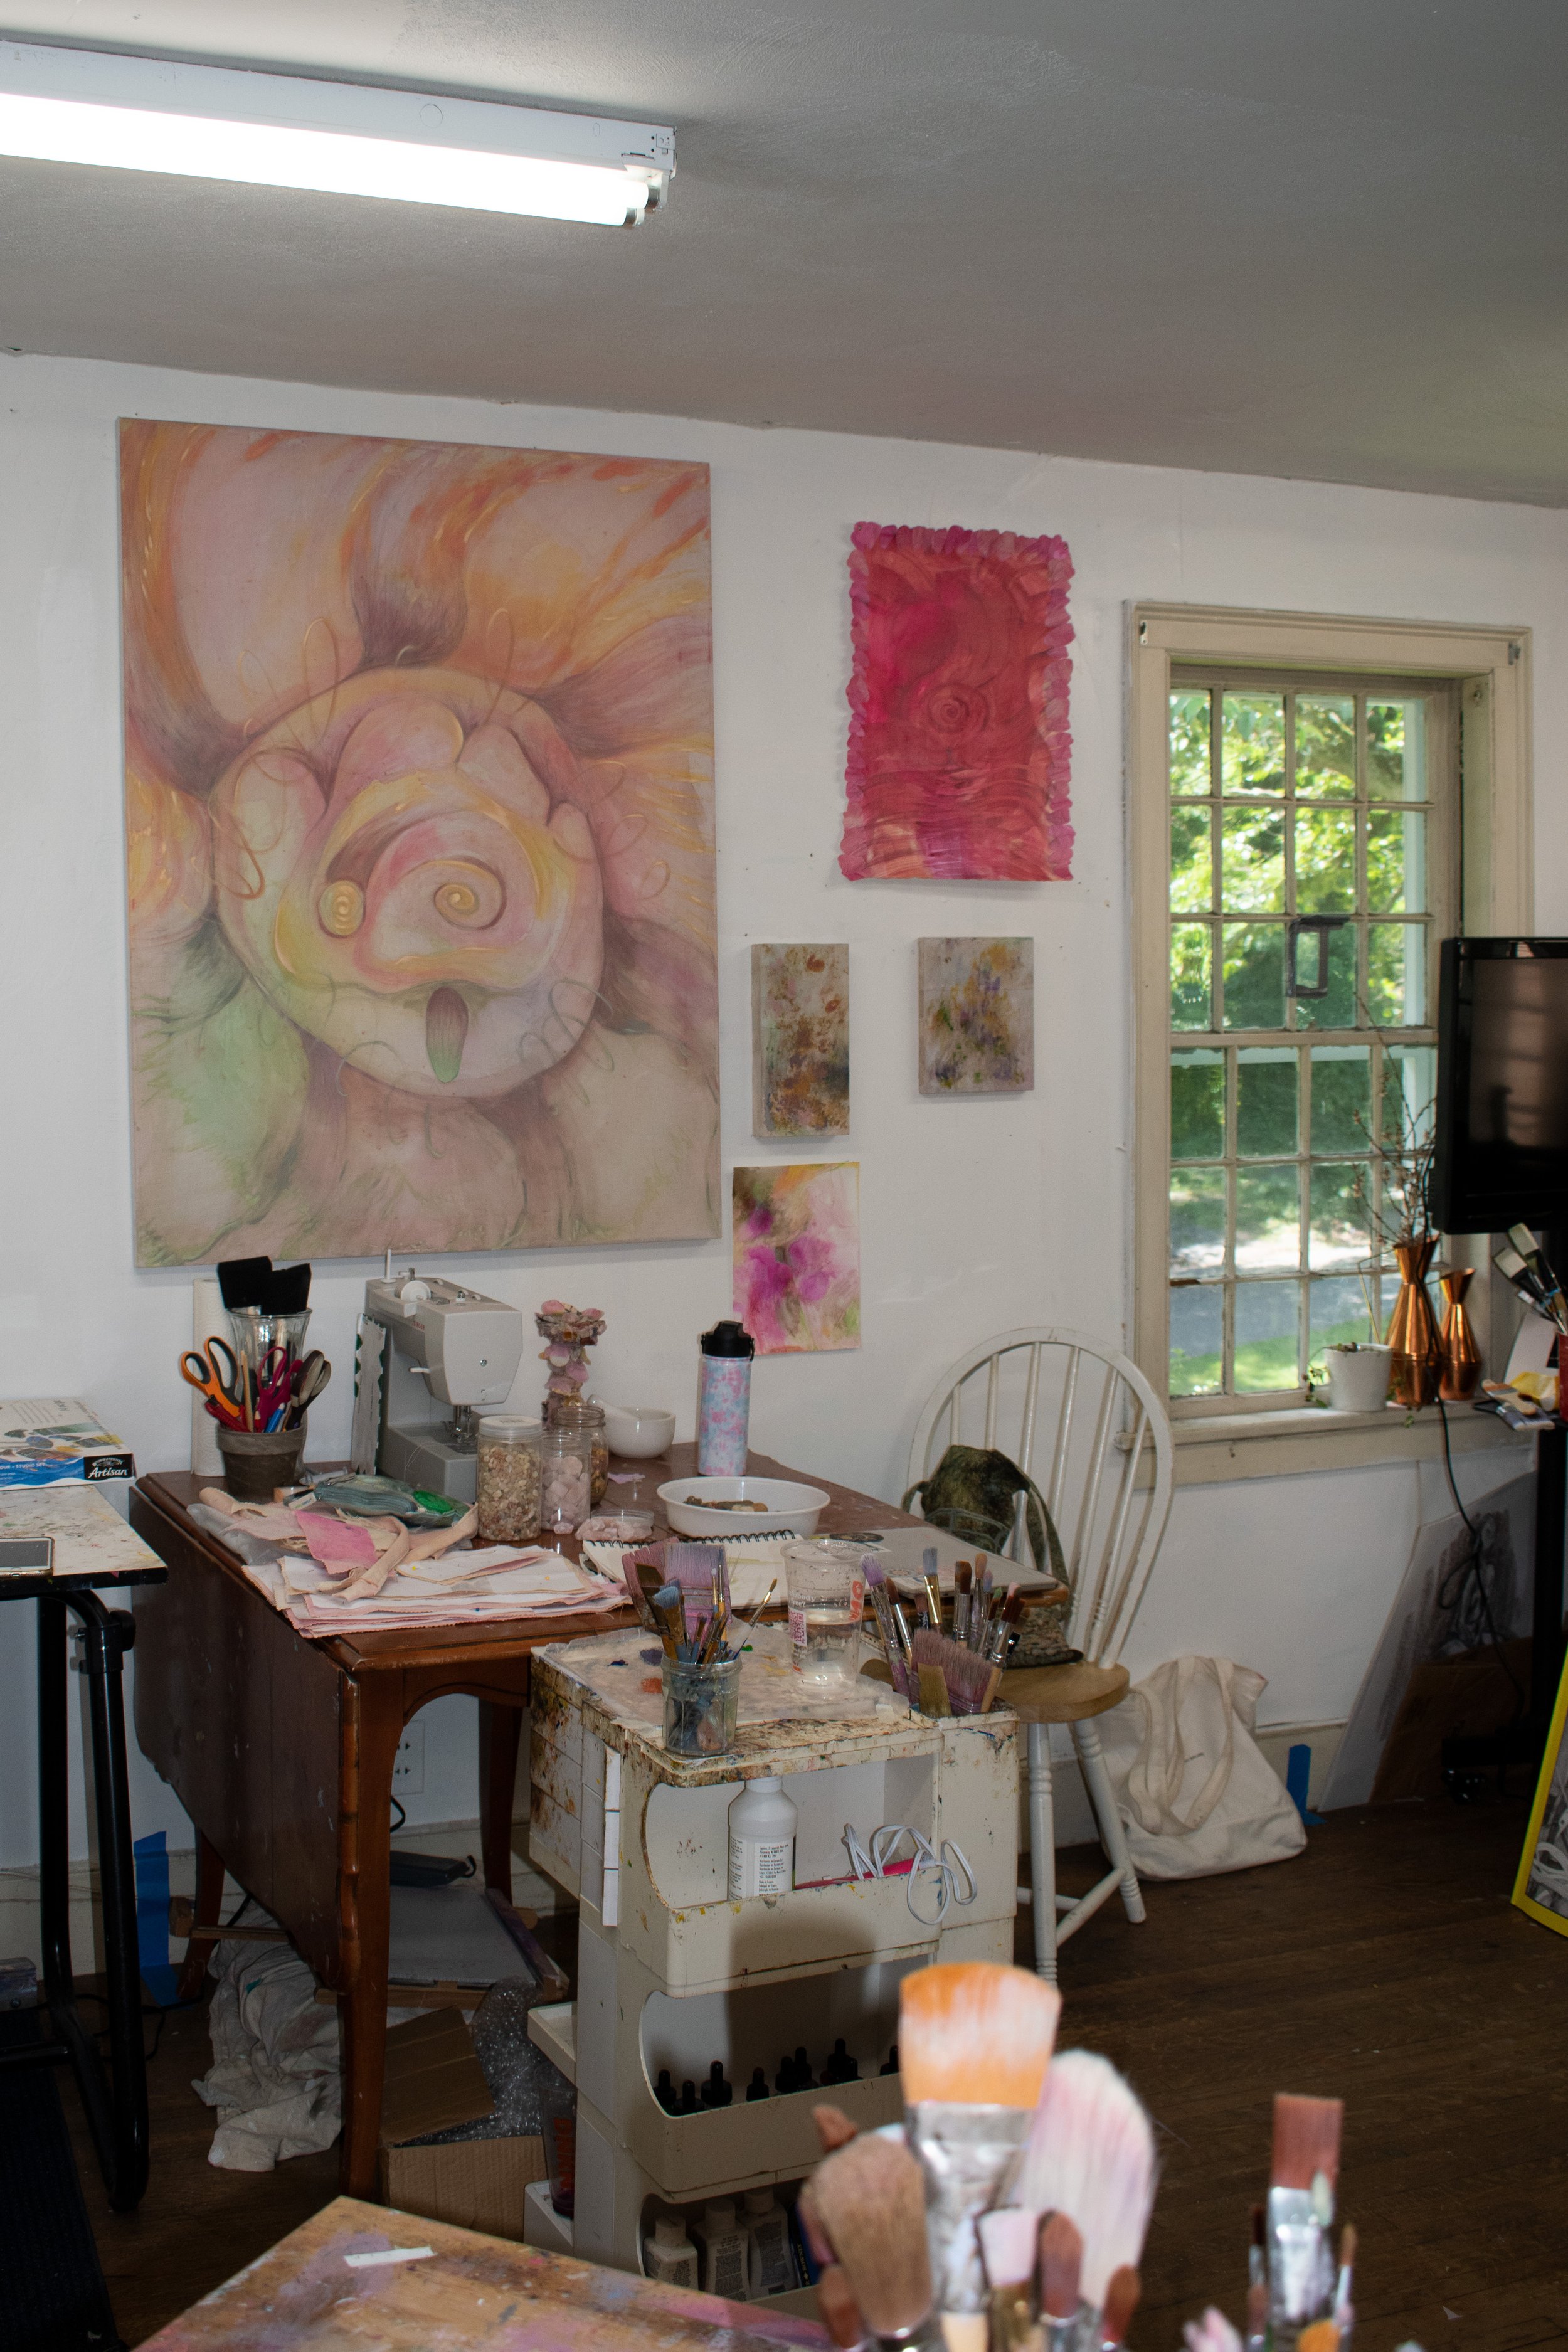 The studio of Rebecca Poarch